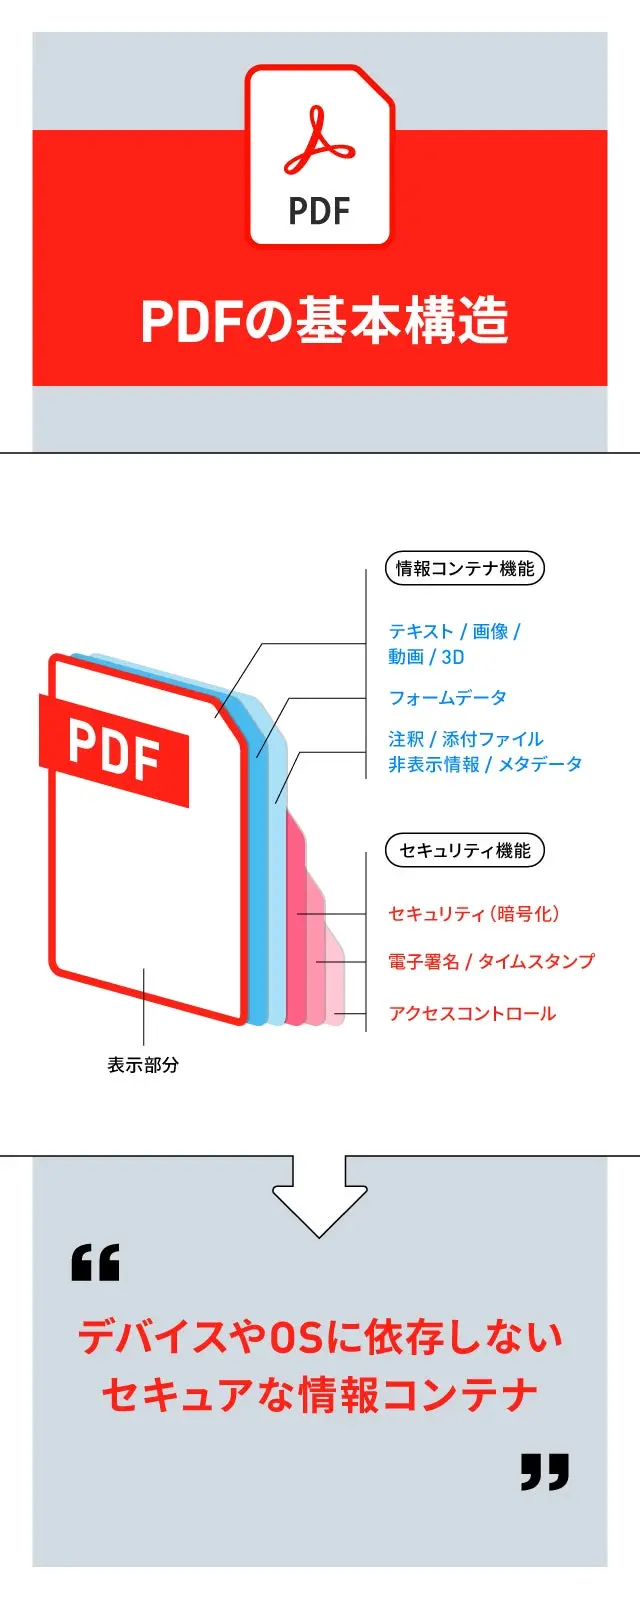 PDFの基本構造